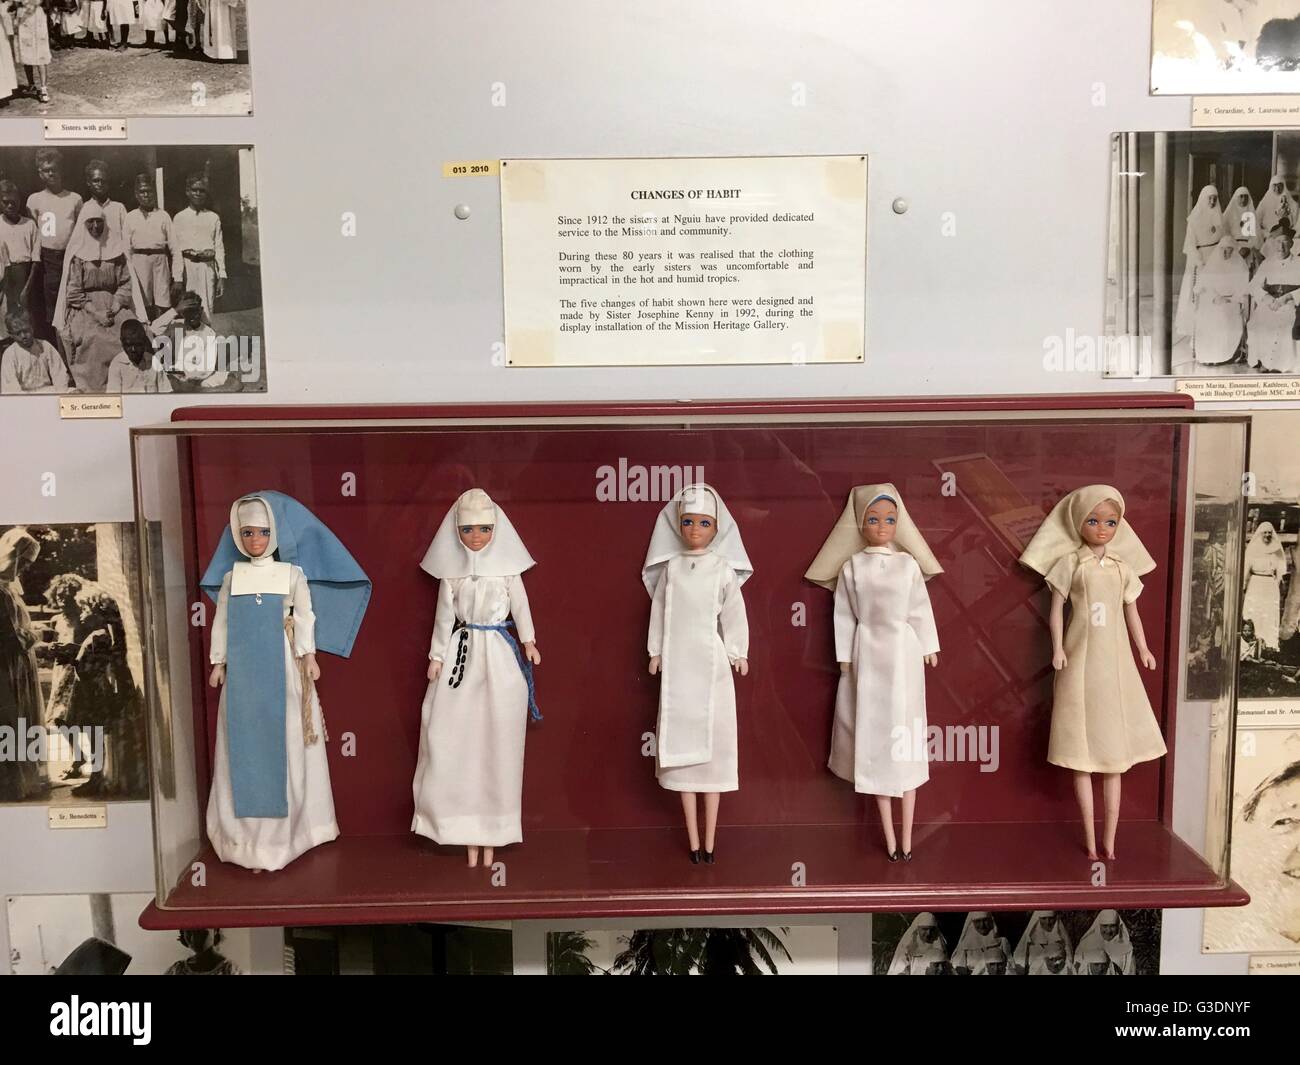 Ausstellung von Nonnen Gewohnheiten im Laufe der Jahre auf Puppen im Museum auf Bathurst Island, einer der den Tiwi Islands angezeigt. Stockfoto